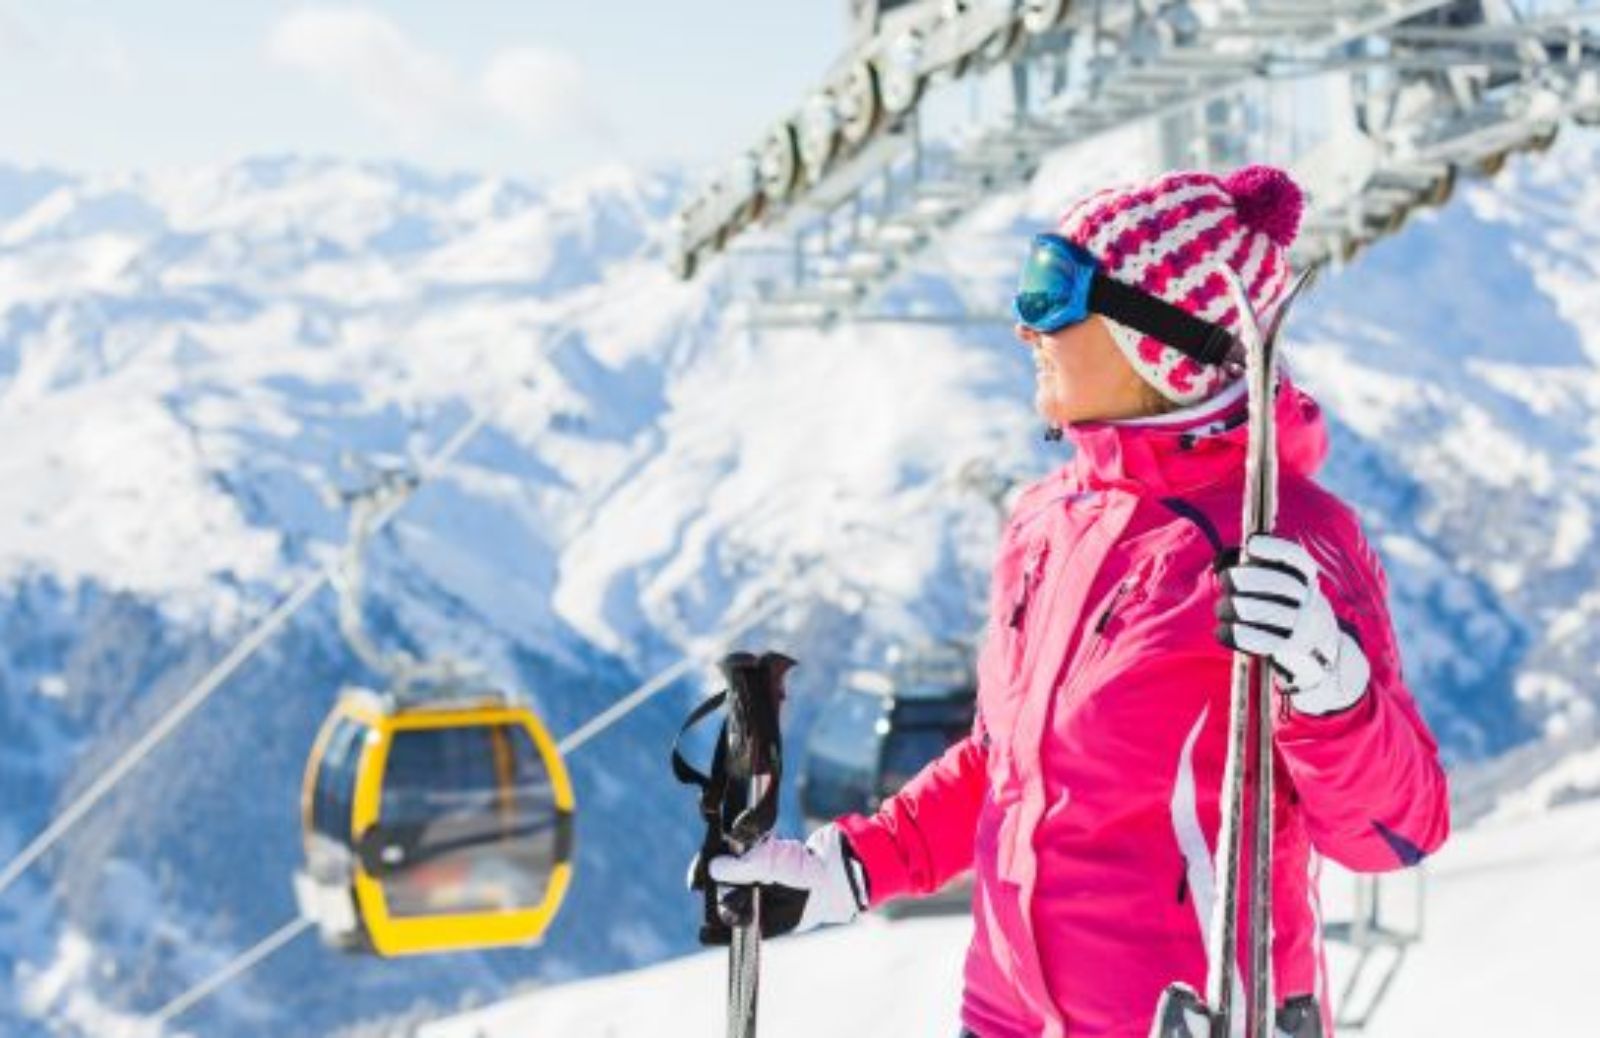 Come imparare a sciare: cadere con stile!